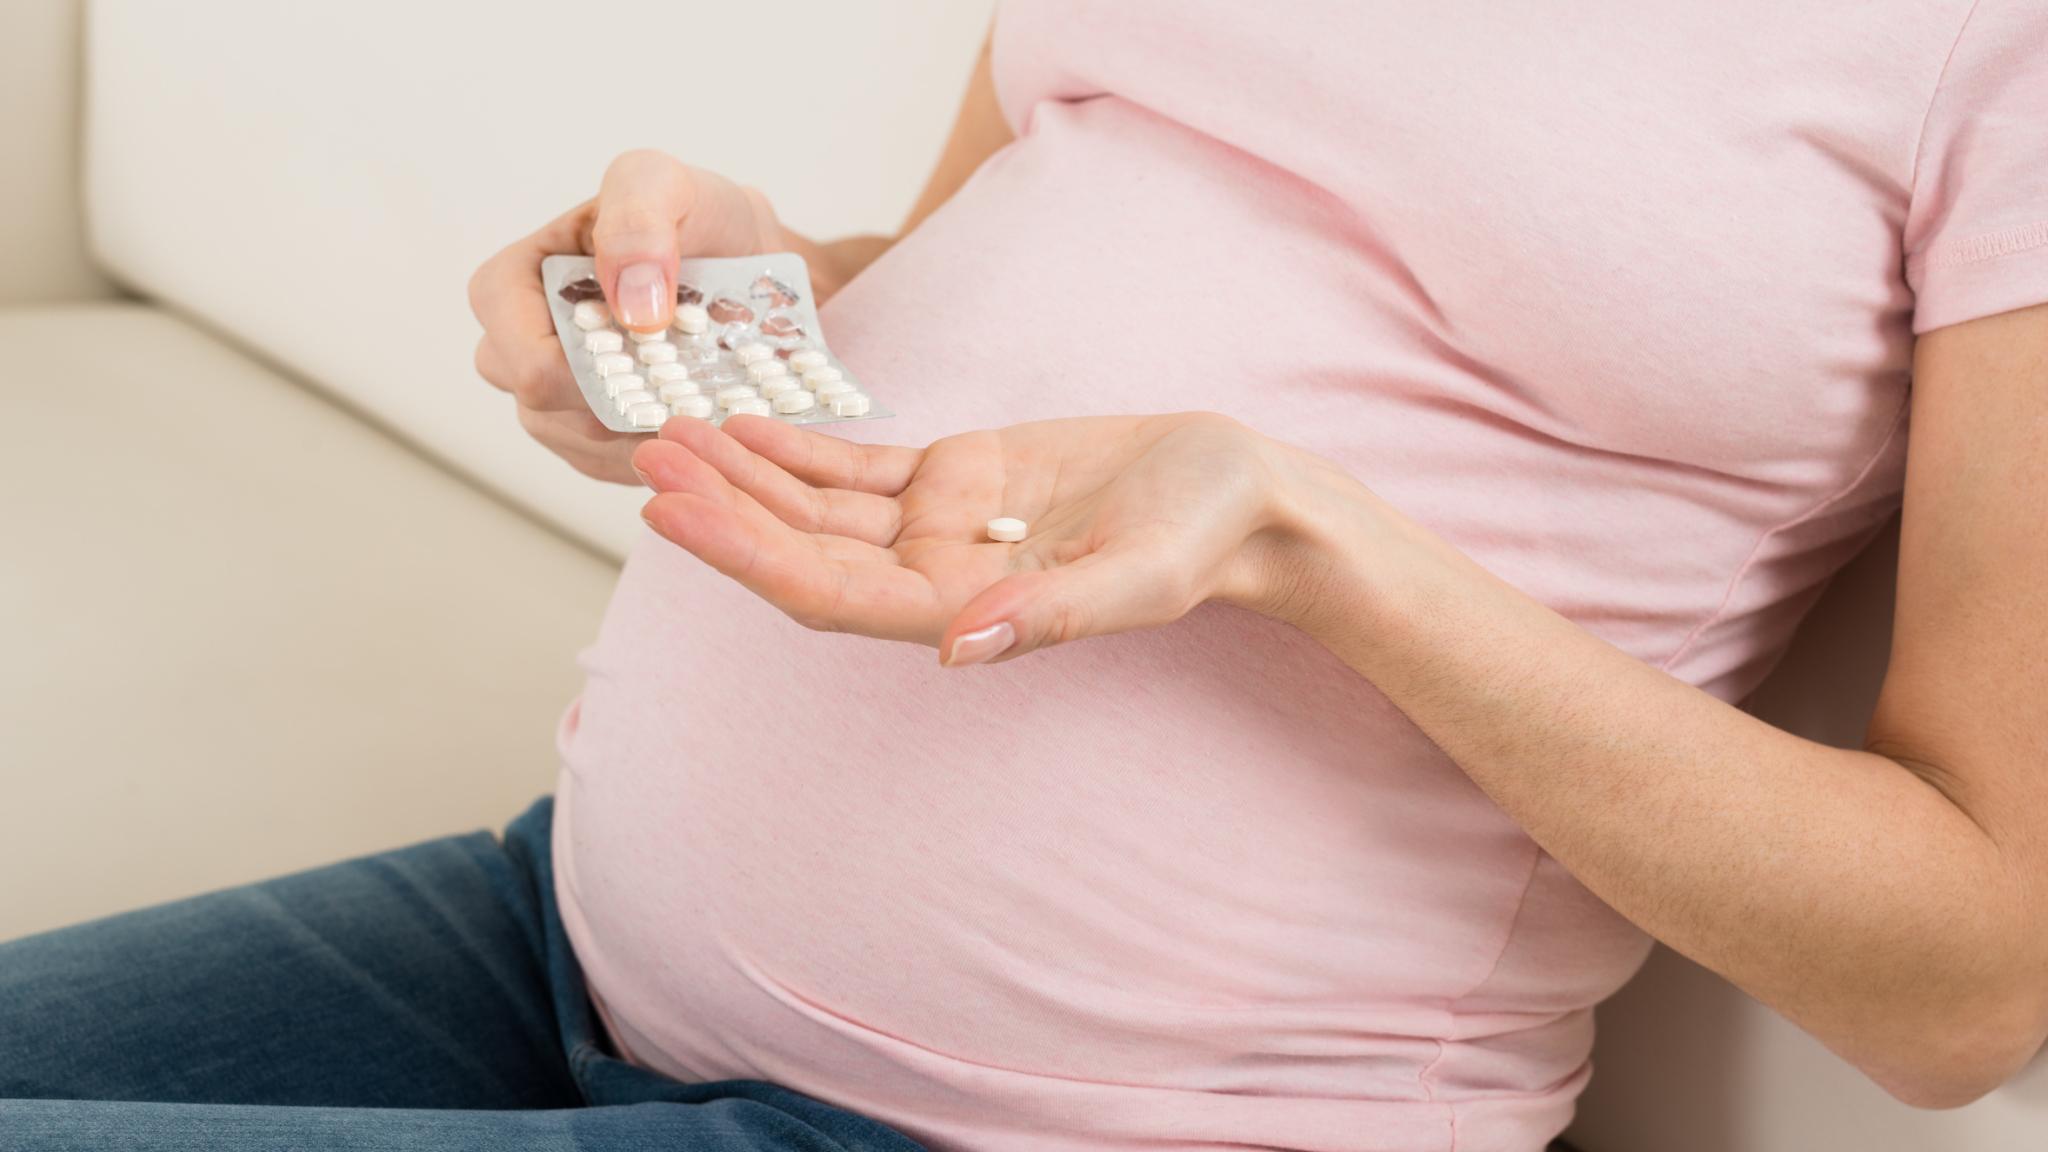 Ибупрофен и аспирин во время беременности могут вызвать почечные нарушения у ребенка